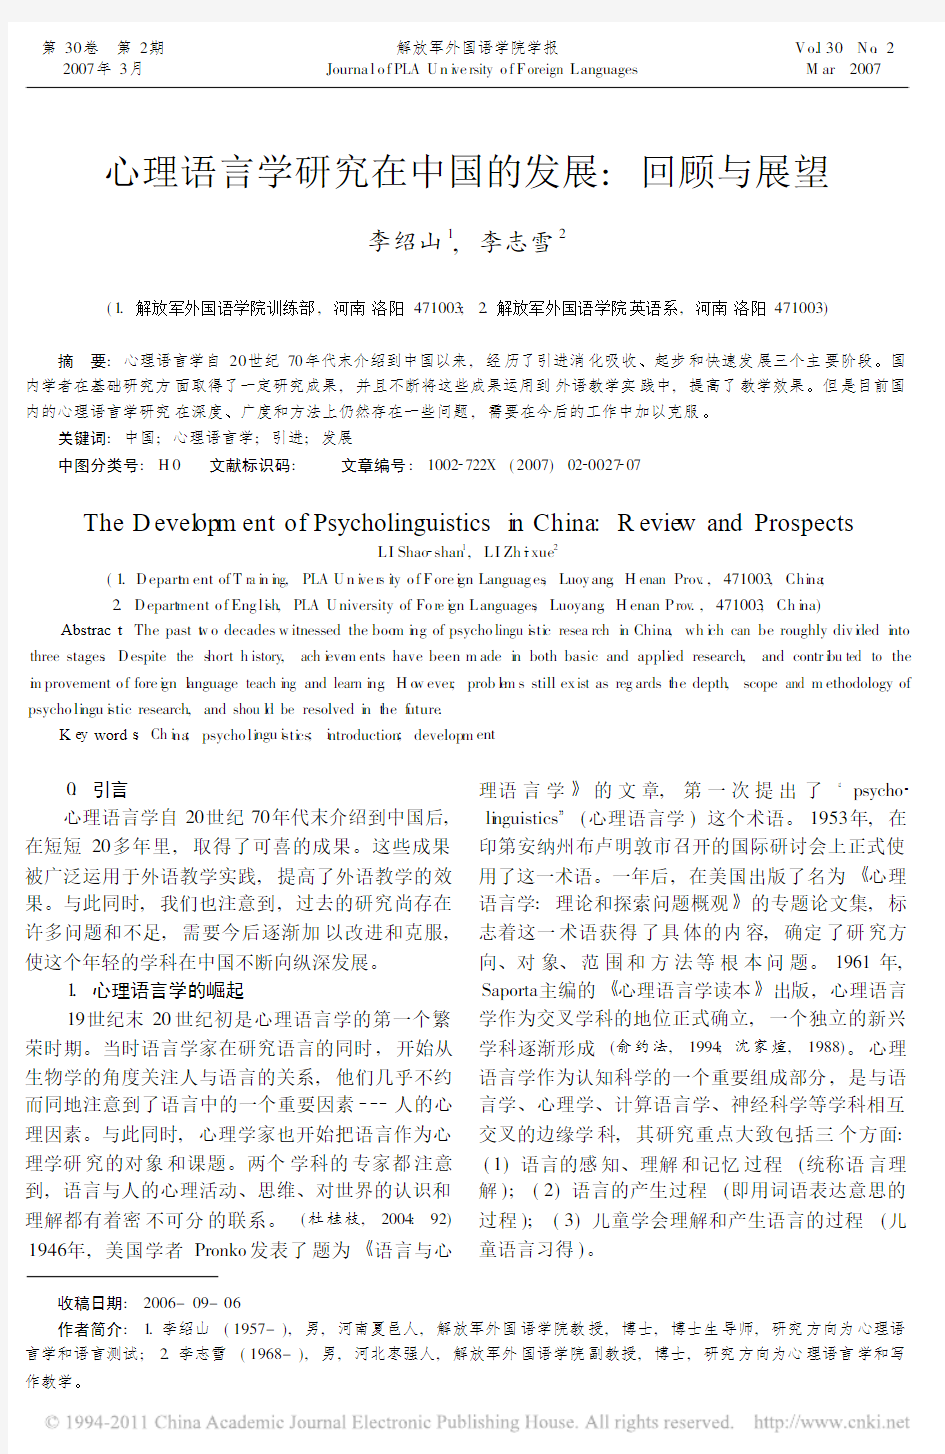 心理语言学研究在中国的发展_回顾与展望_李绍山